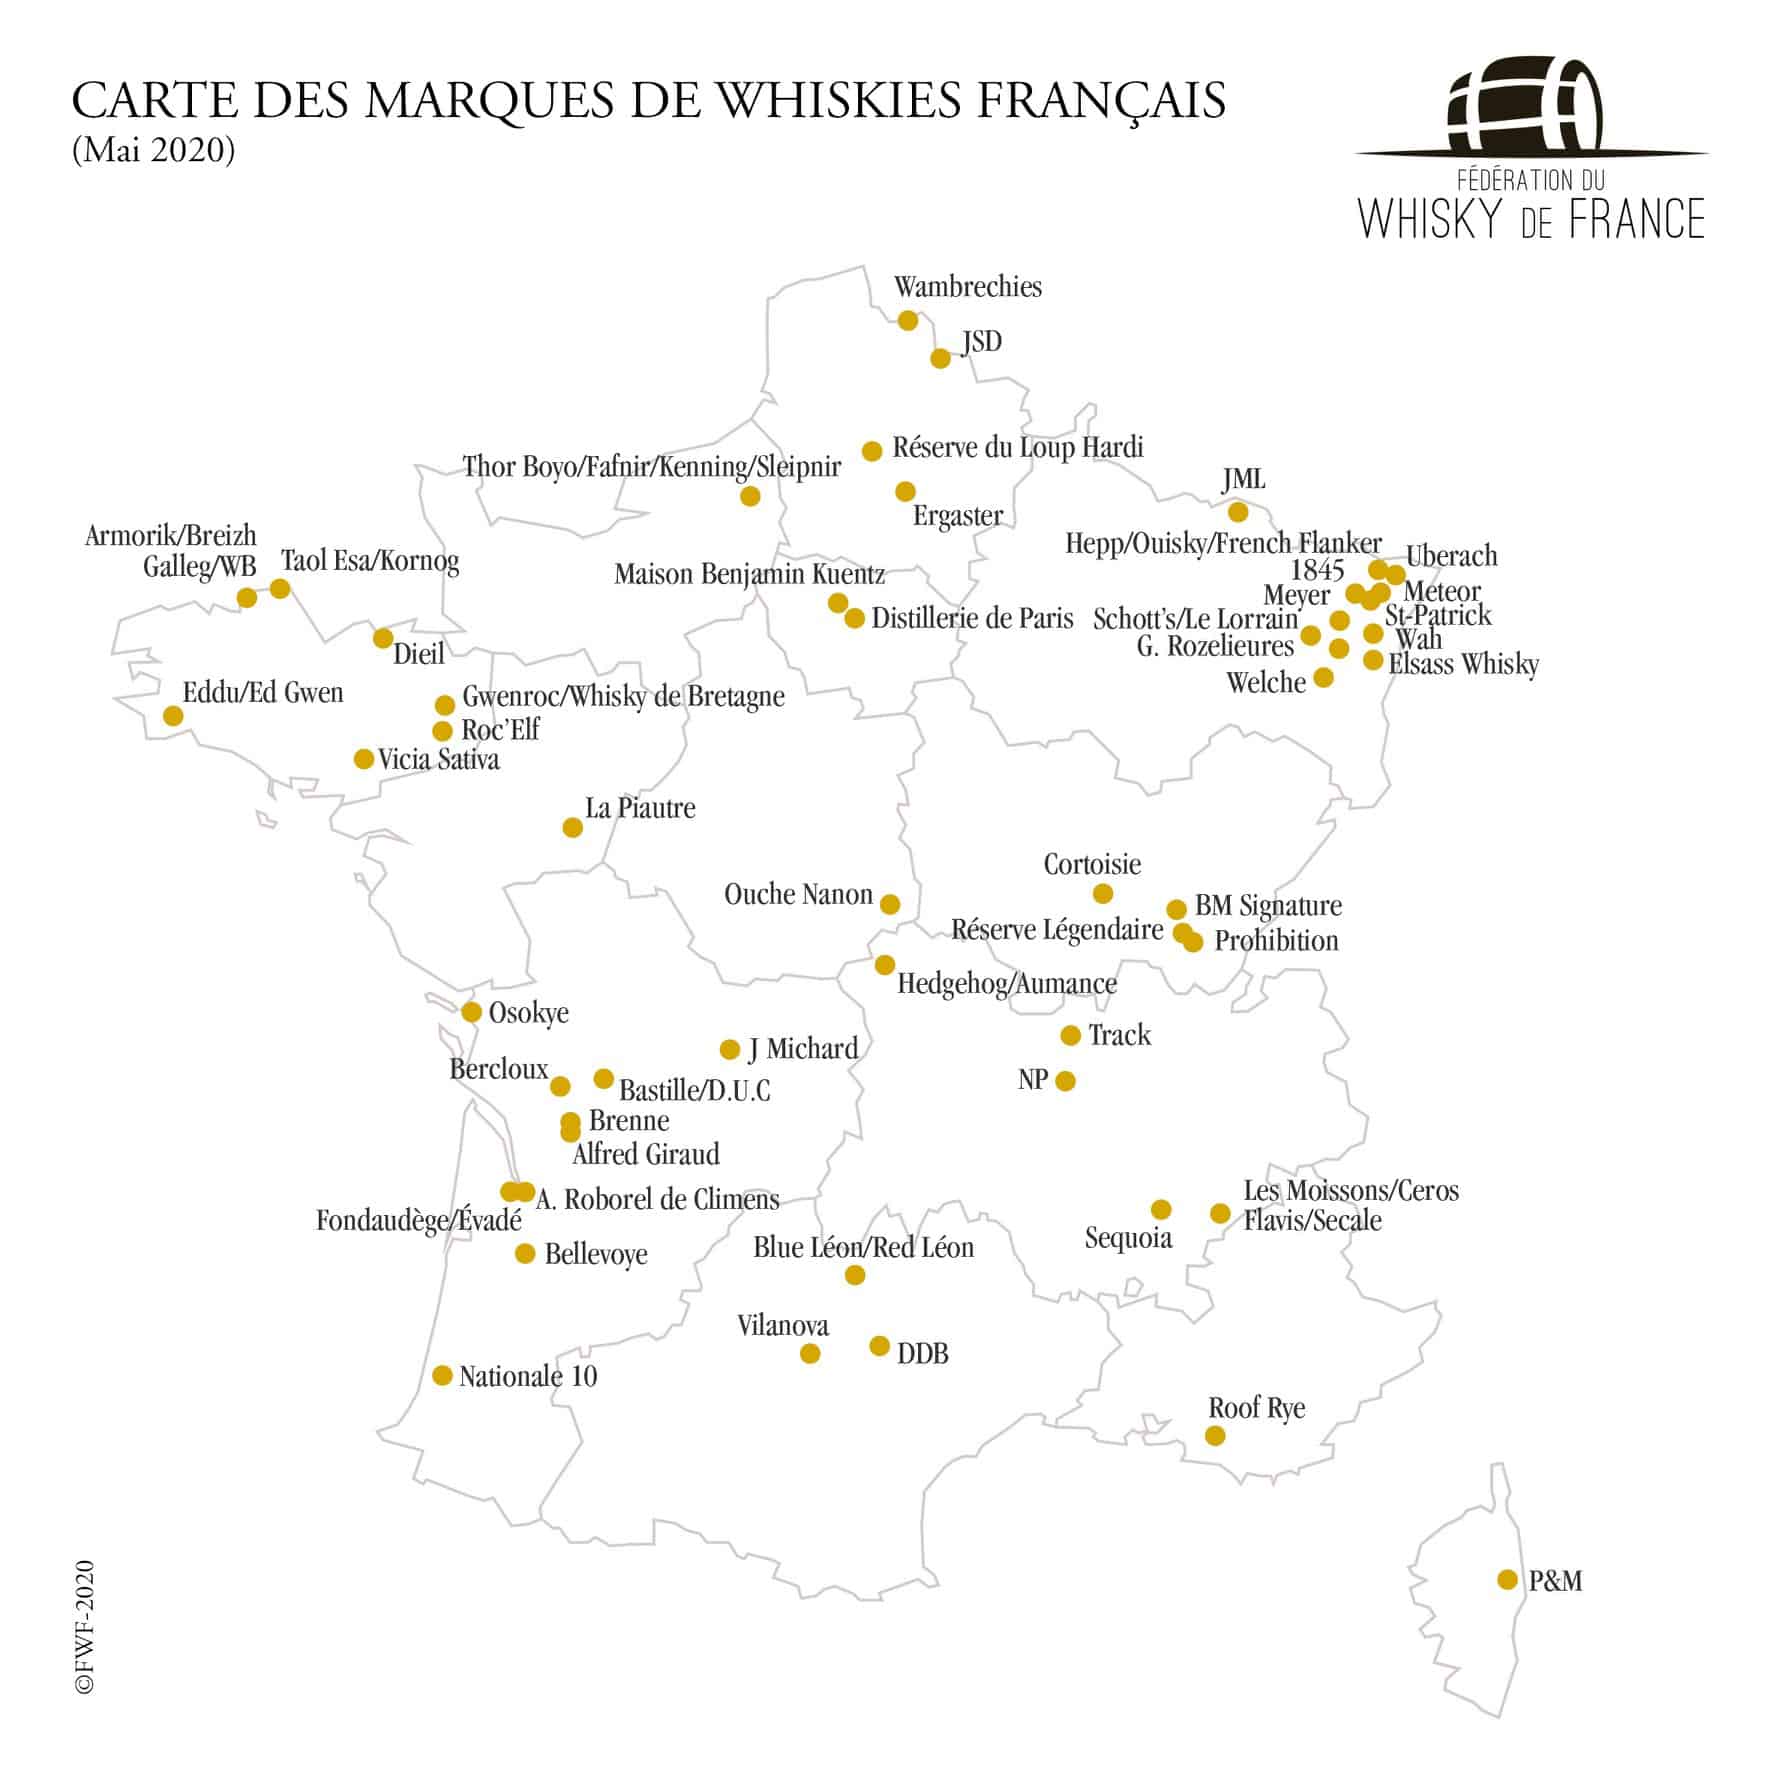 La carte des marques de whiskies français